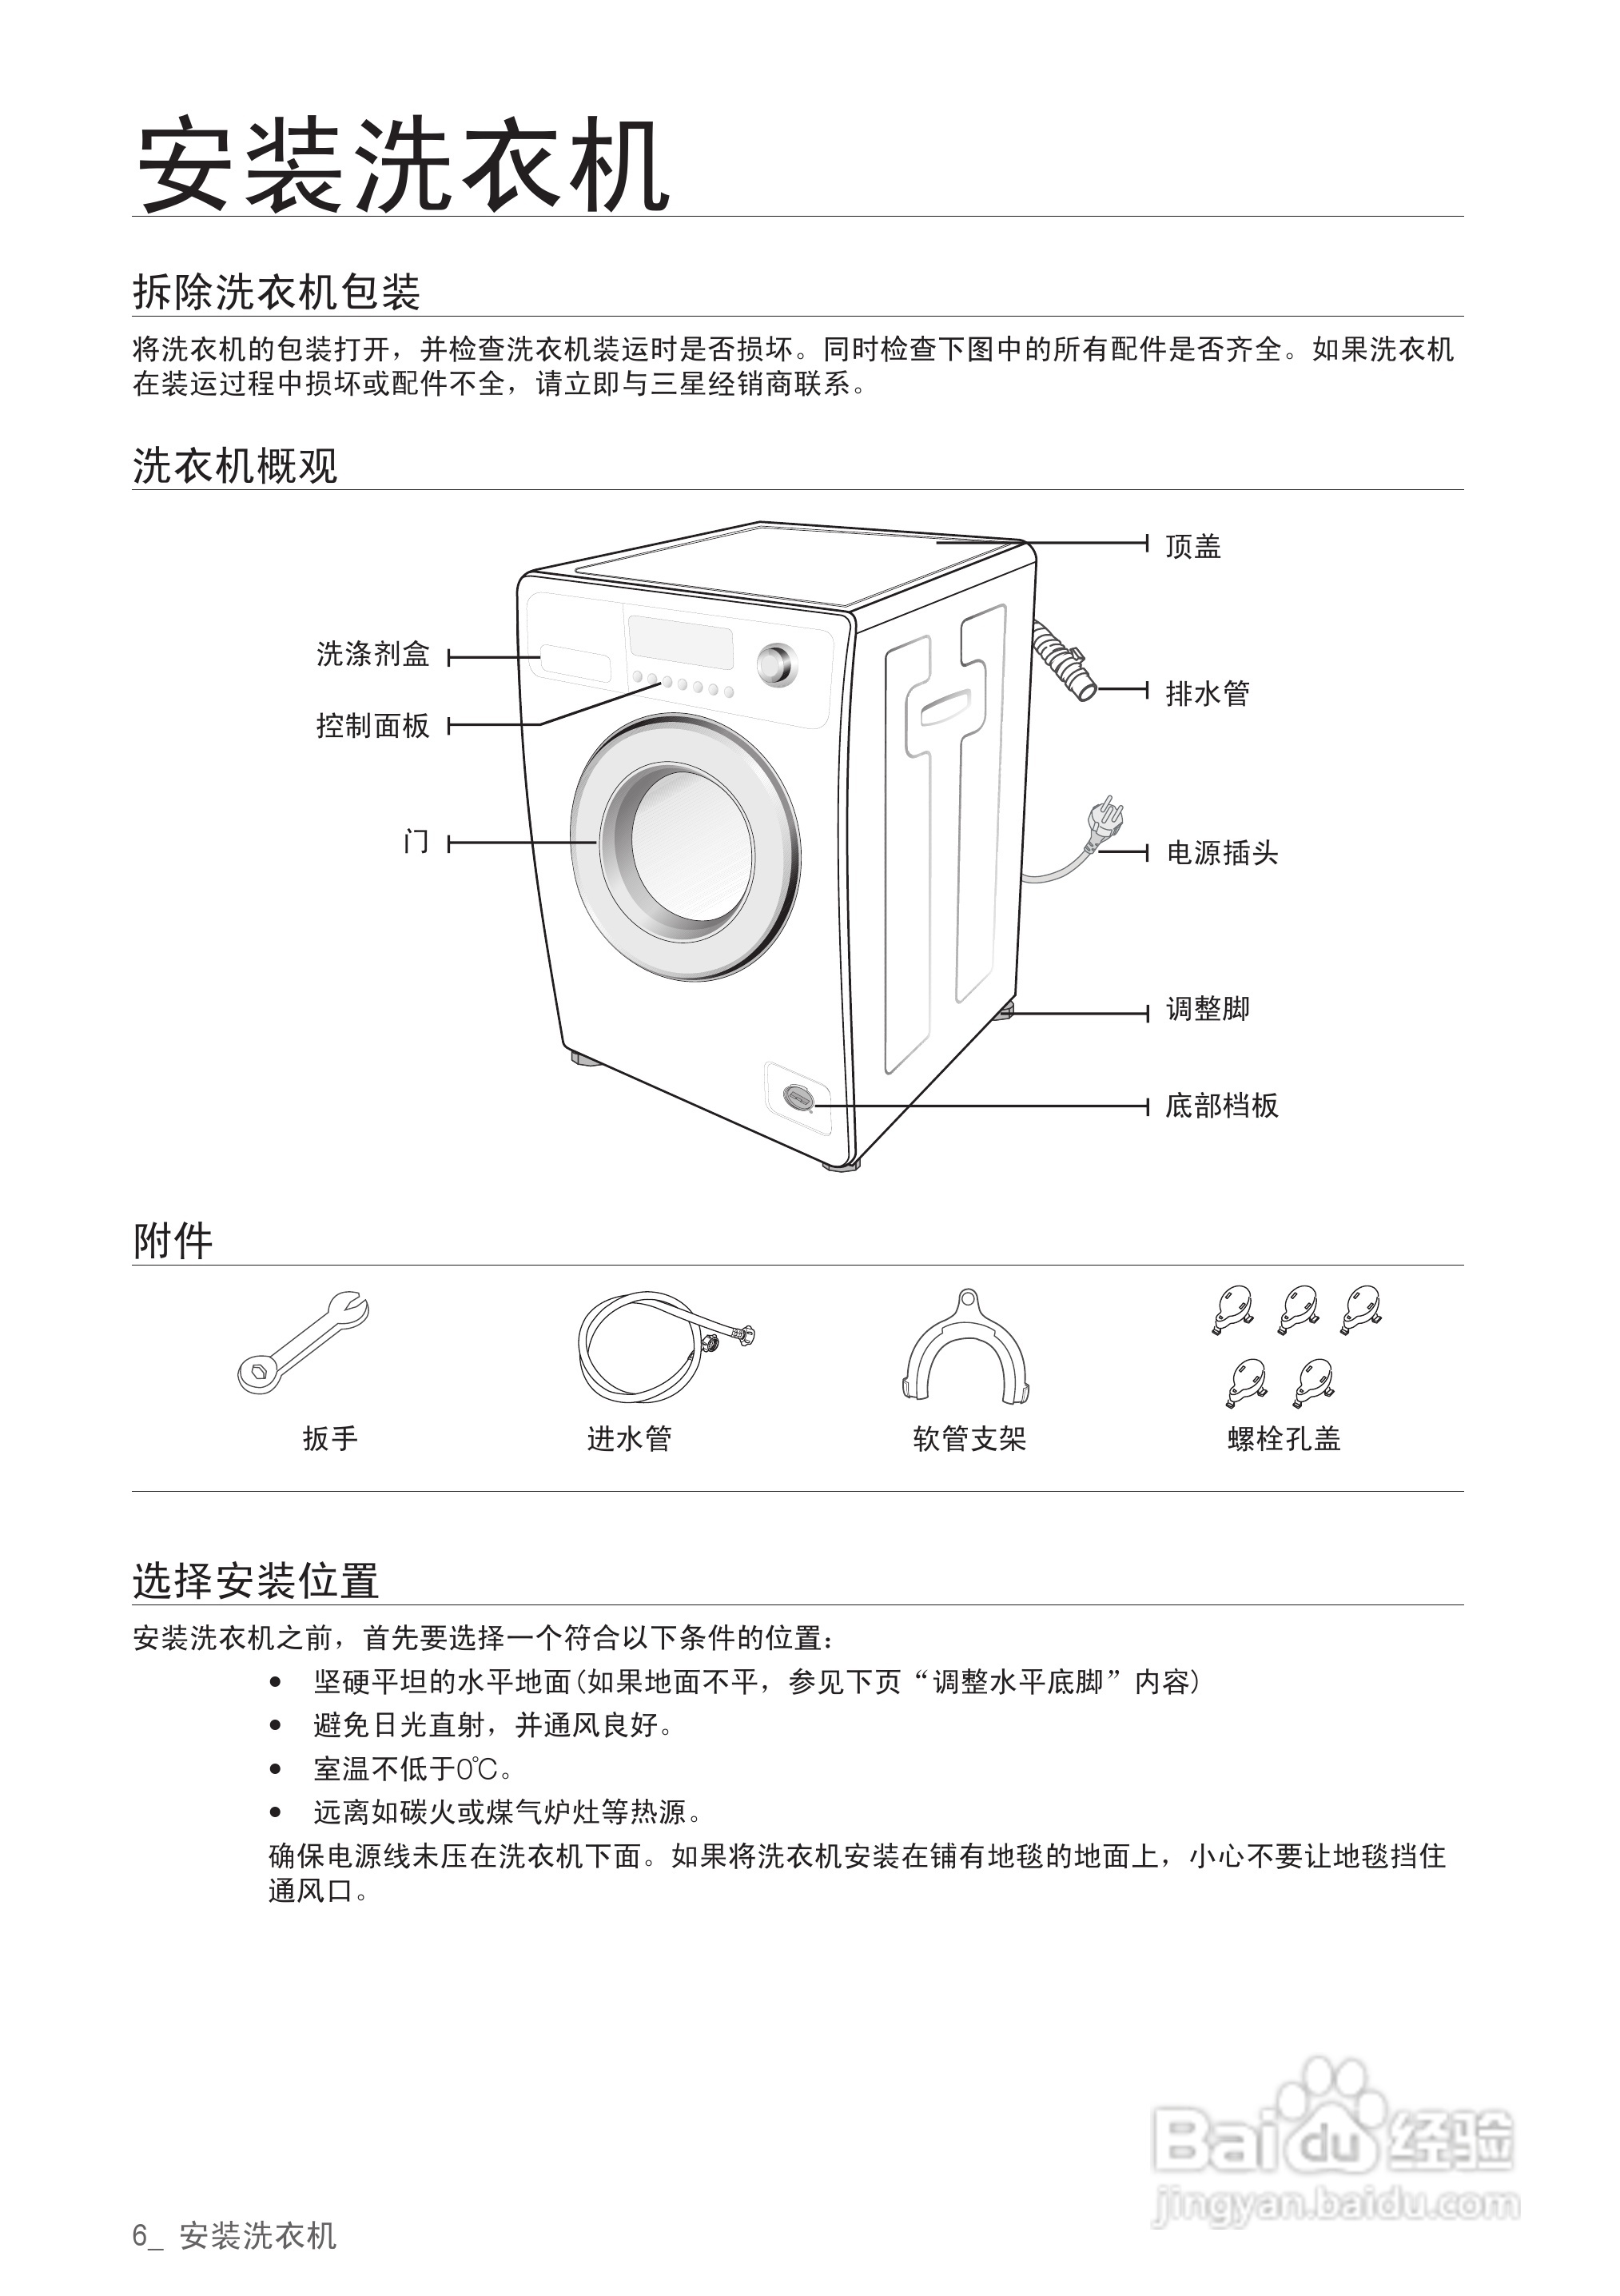 三星wf8752n9p滚筒洗衣机使用说明书:[1]